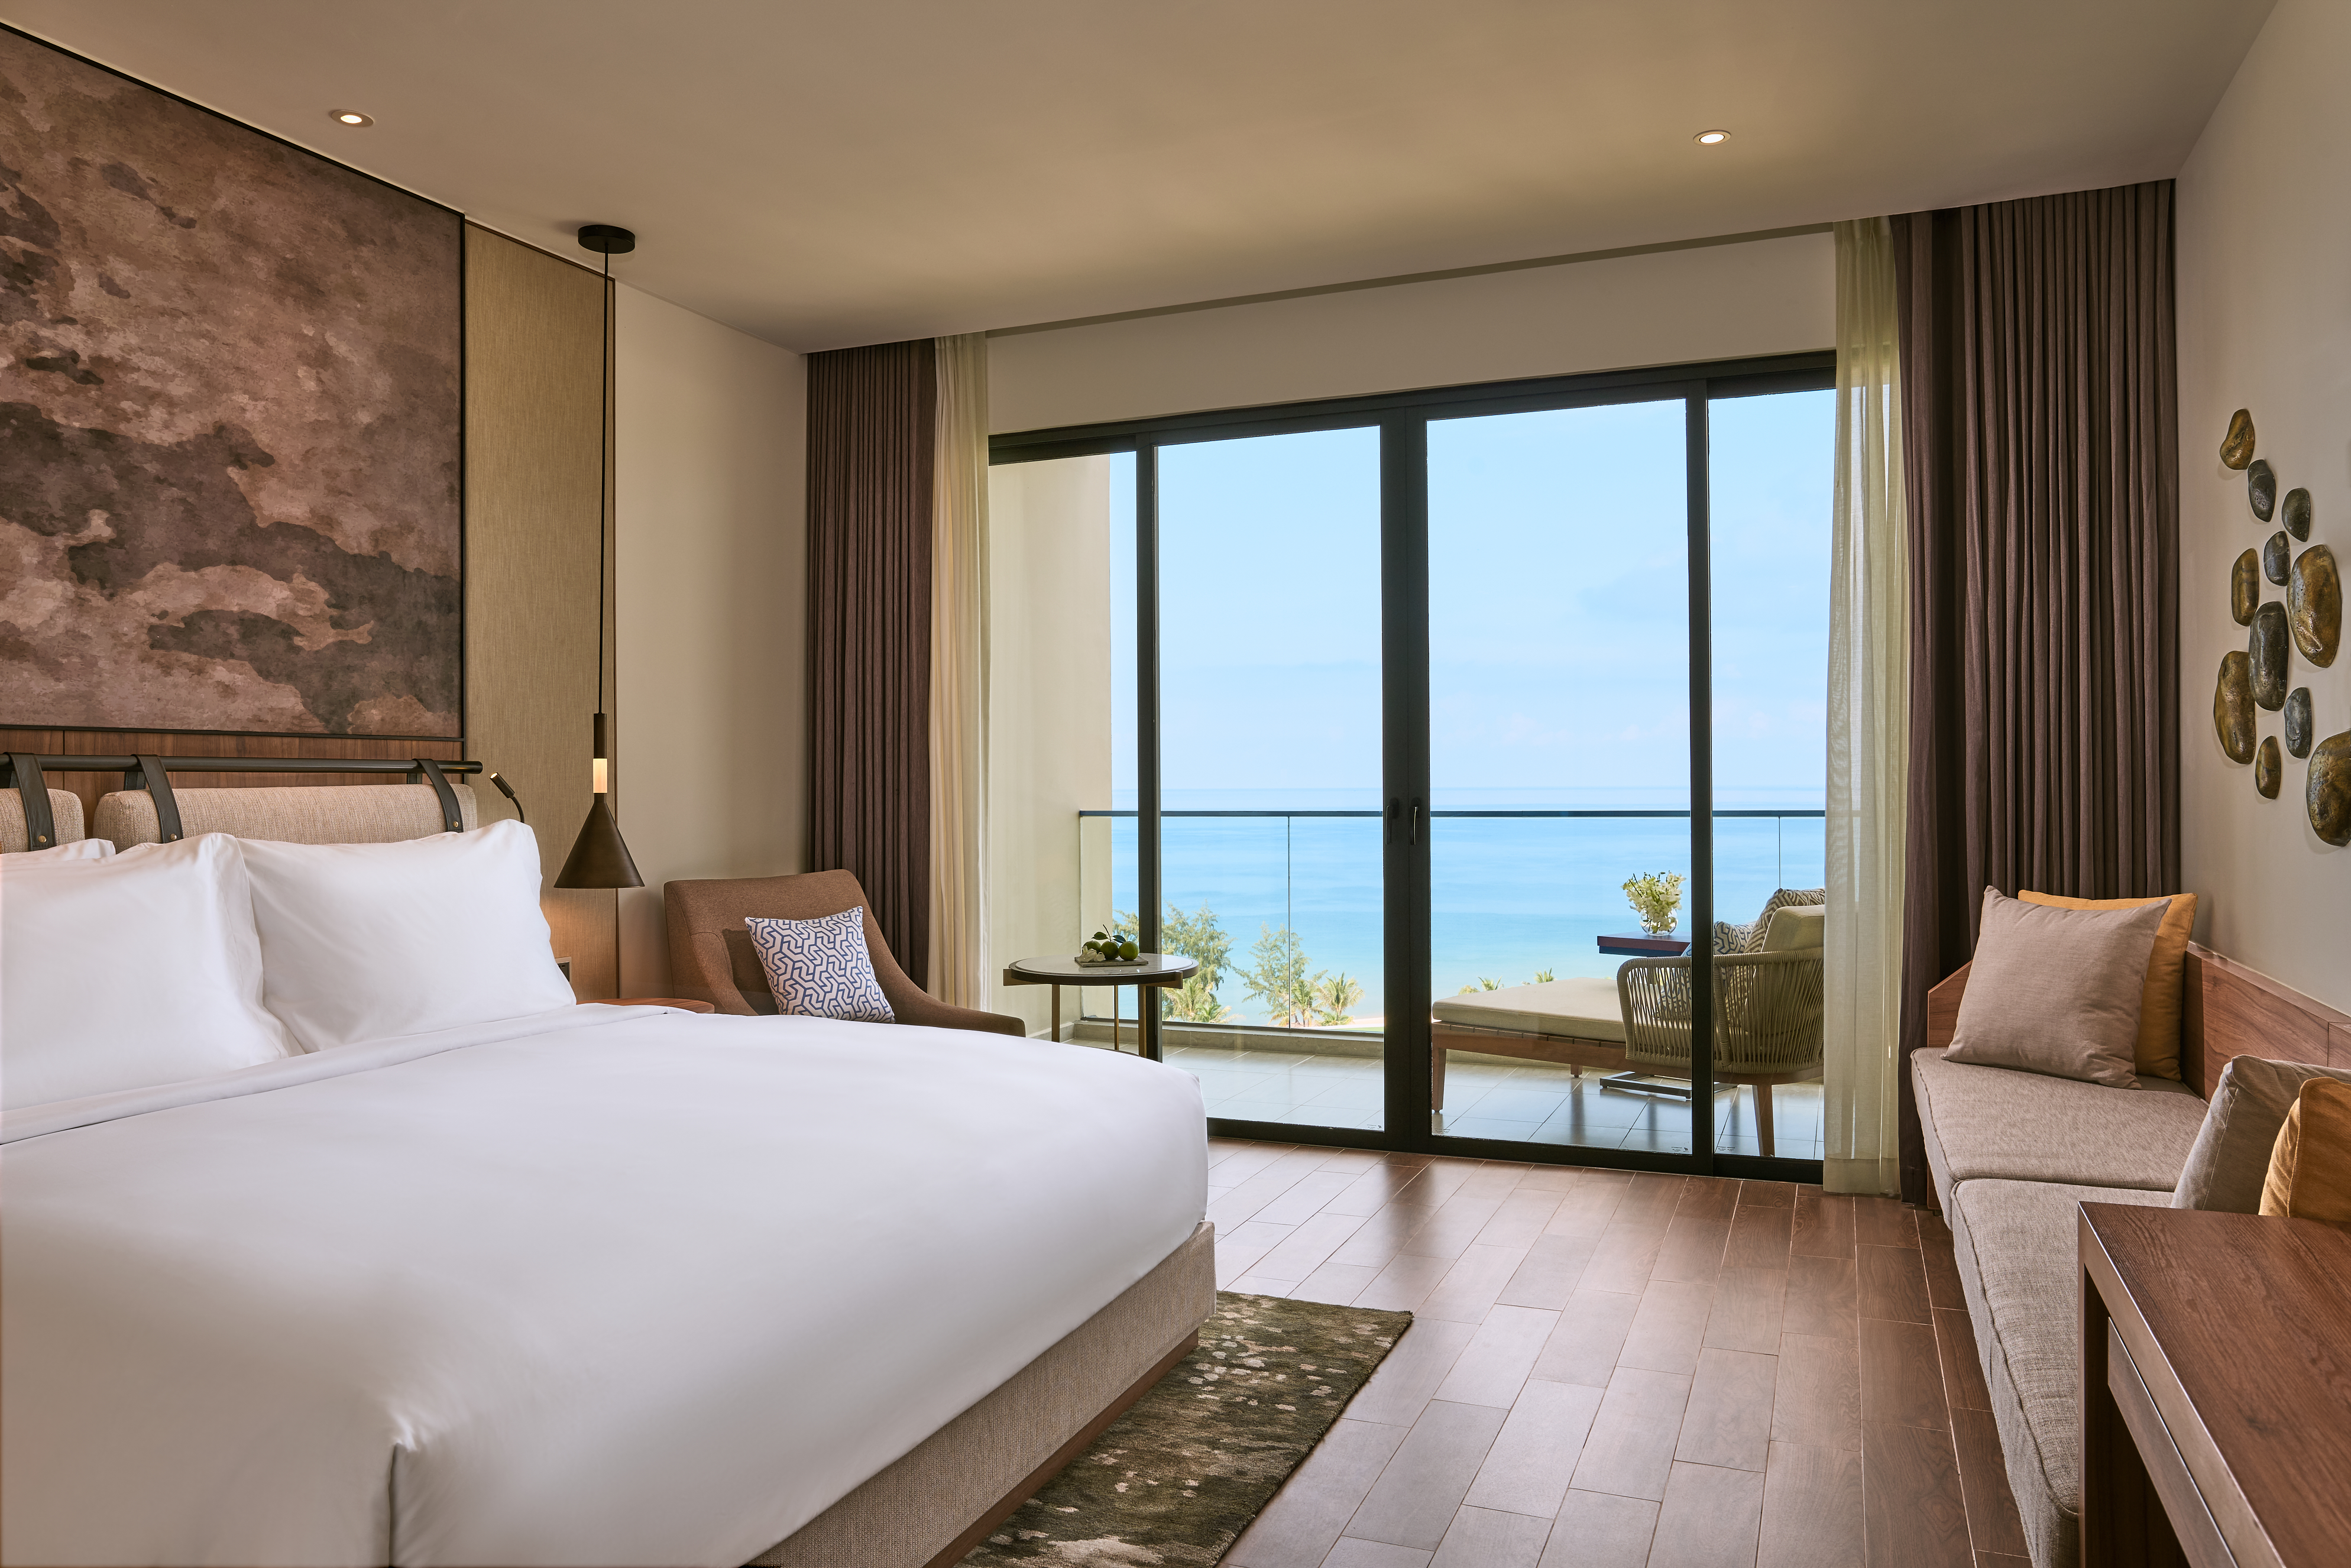 Review Khách Sạn Jw Marriott Phú Quốc về cơ sở vật chất và dịch vụ khách hàng